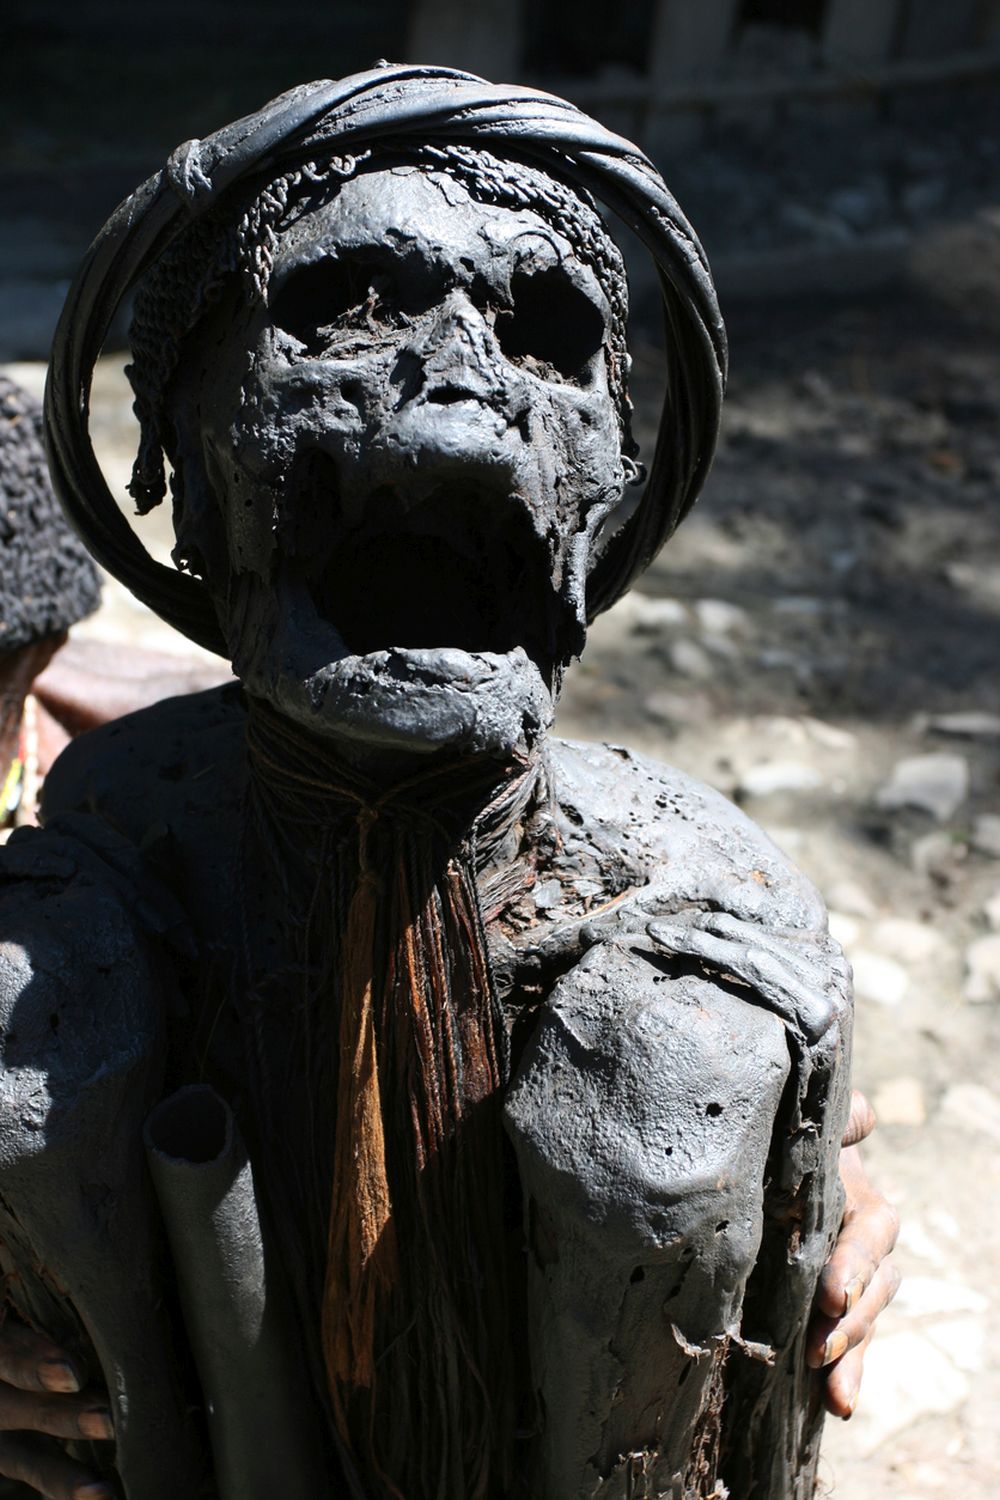 Пушени мумии, Папуа, Нова Гвинея. Племето Анга отдава почит на мъртвите по малко по-различен начин. Представители на племето не погребват роднините си в земята, а мумифицират тела, използвайки техниката на опушване. Те създават гробни места близо до селата и по-късно често ги посещават. За племето Анга този метод е форма на показване на уважение към починалите.